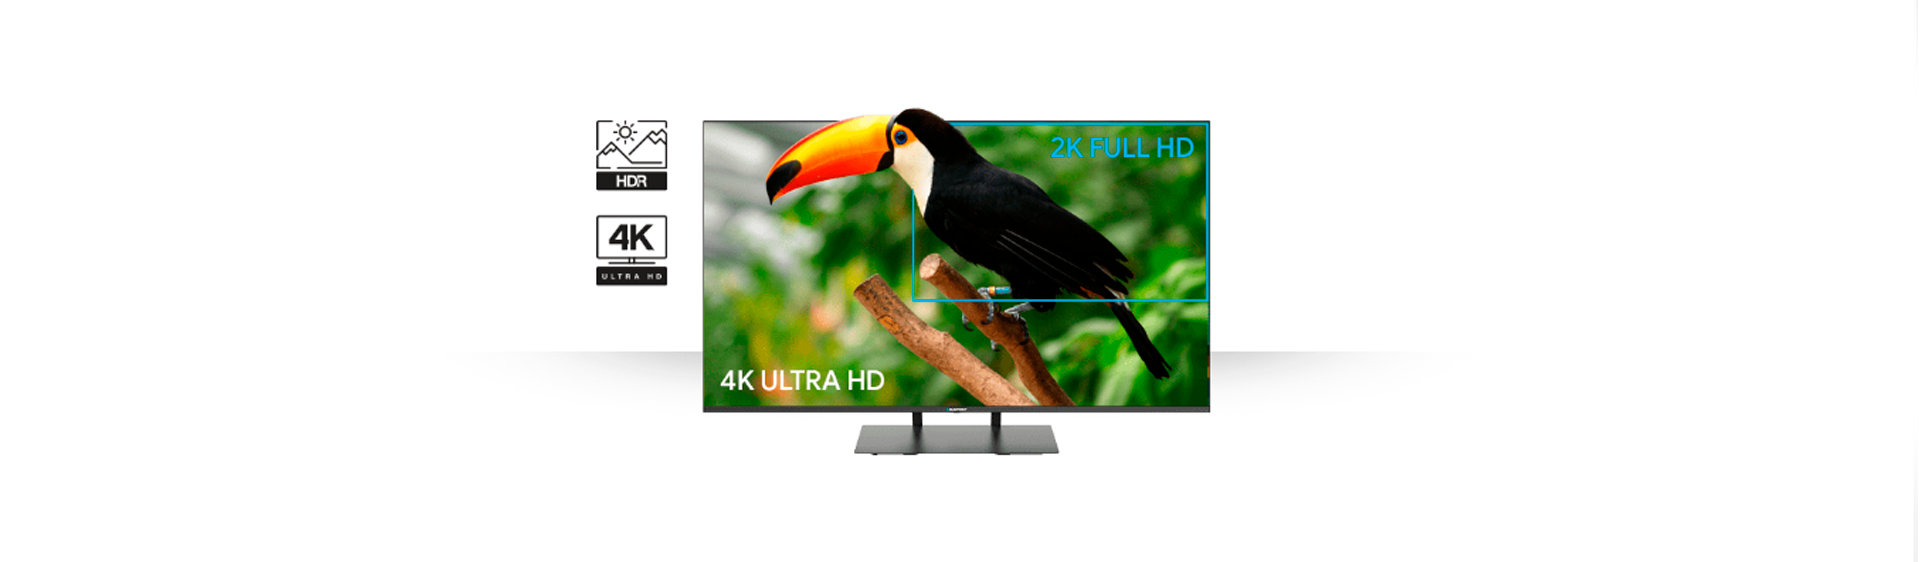 Телевизор UHD 4K Smart TV LED Blaupunkt 55UB7000